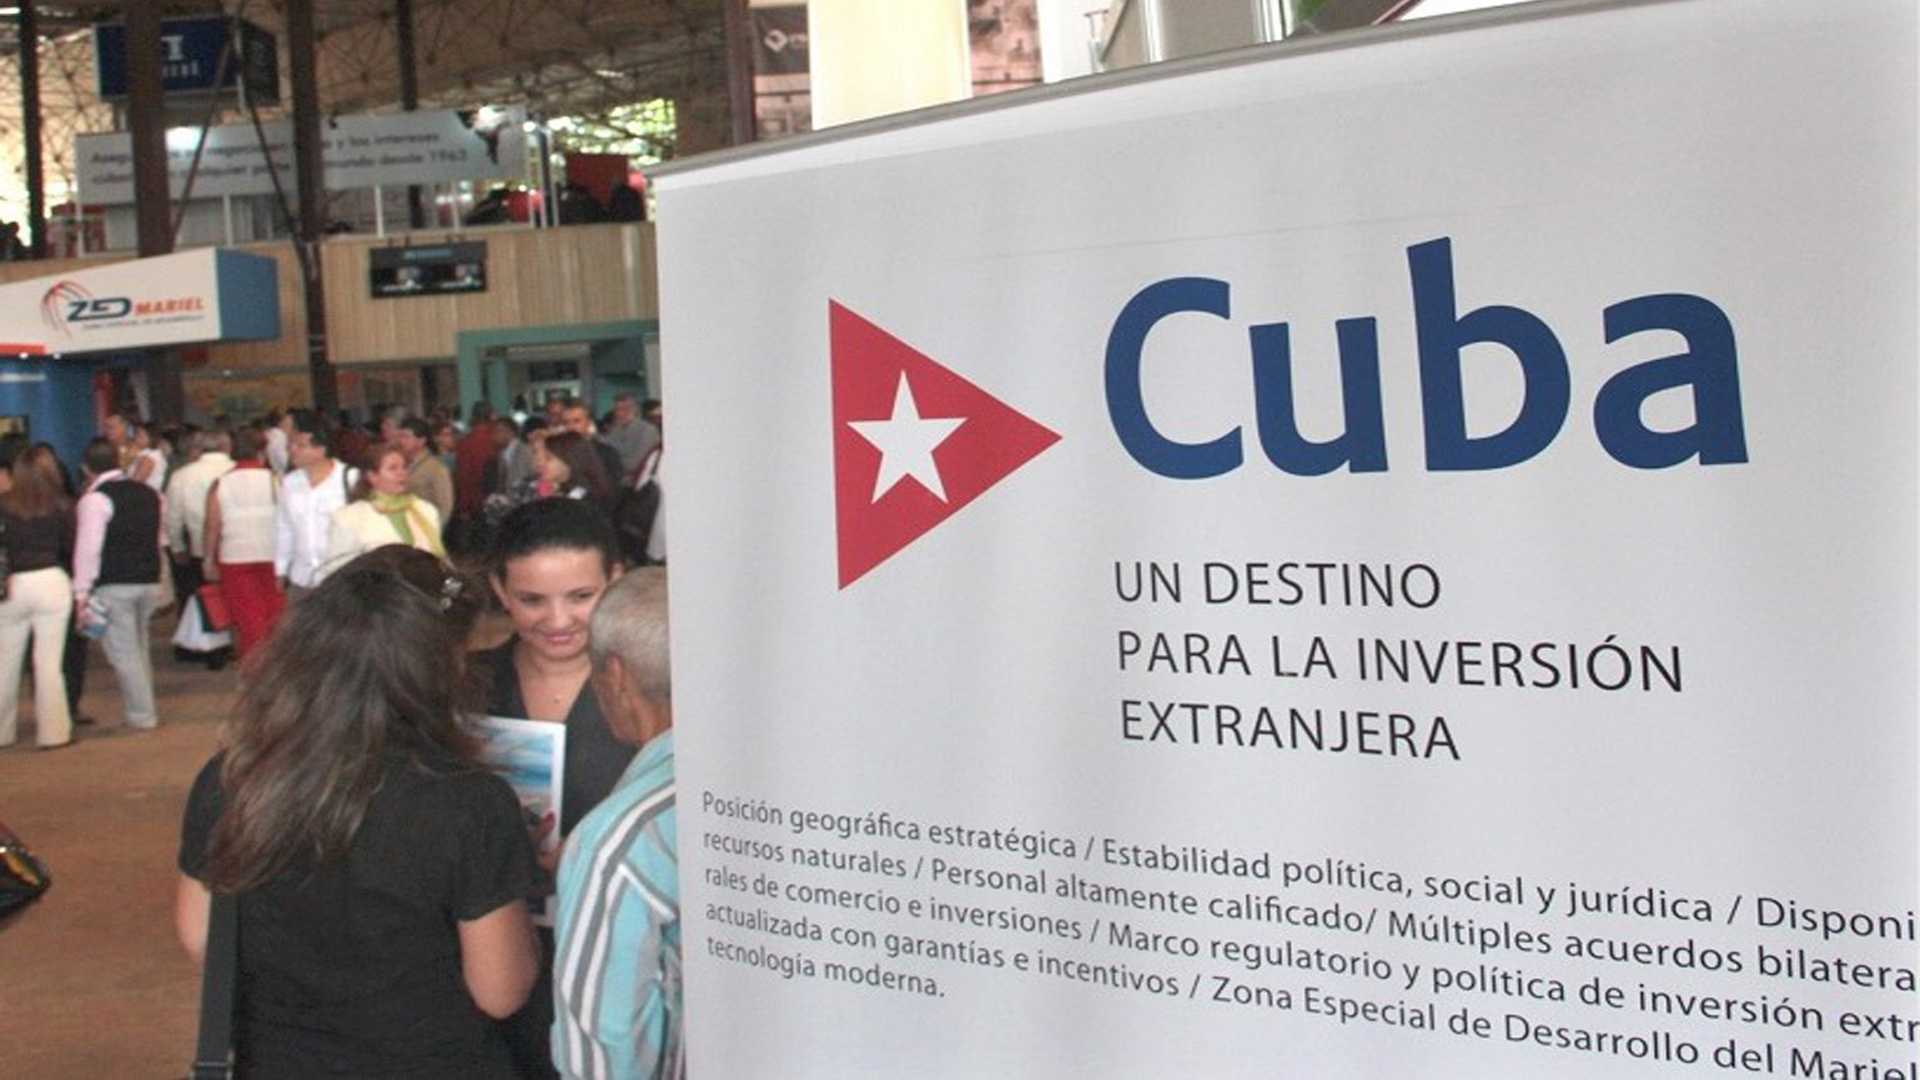 El gobierno italiano y la Organización de Naciones Unidas (ONU) se han unido en un proyecto de más un millón de dólares a favor del interés marcado del régimen cubano de atraer inversión extranjera.